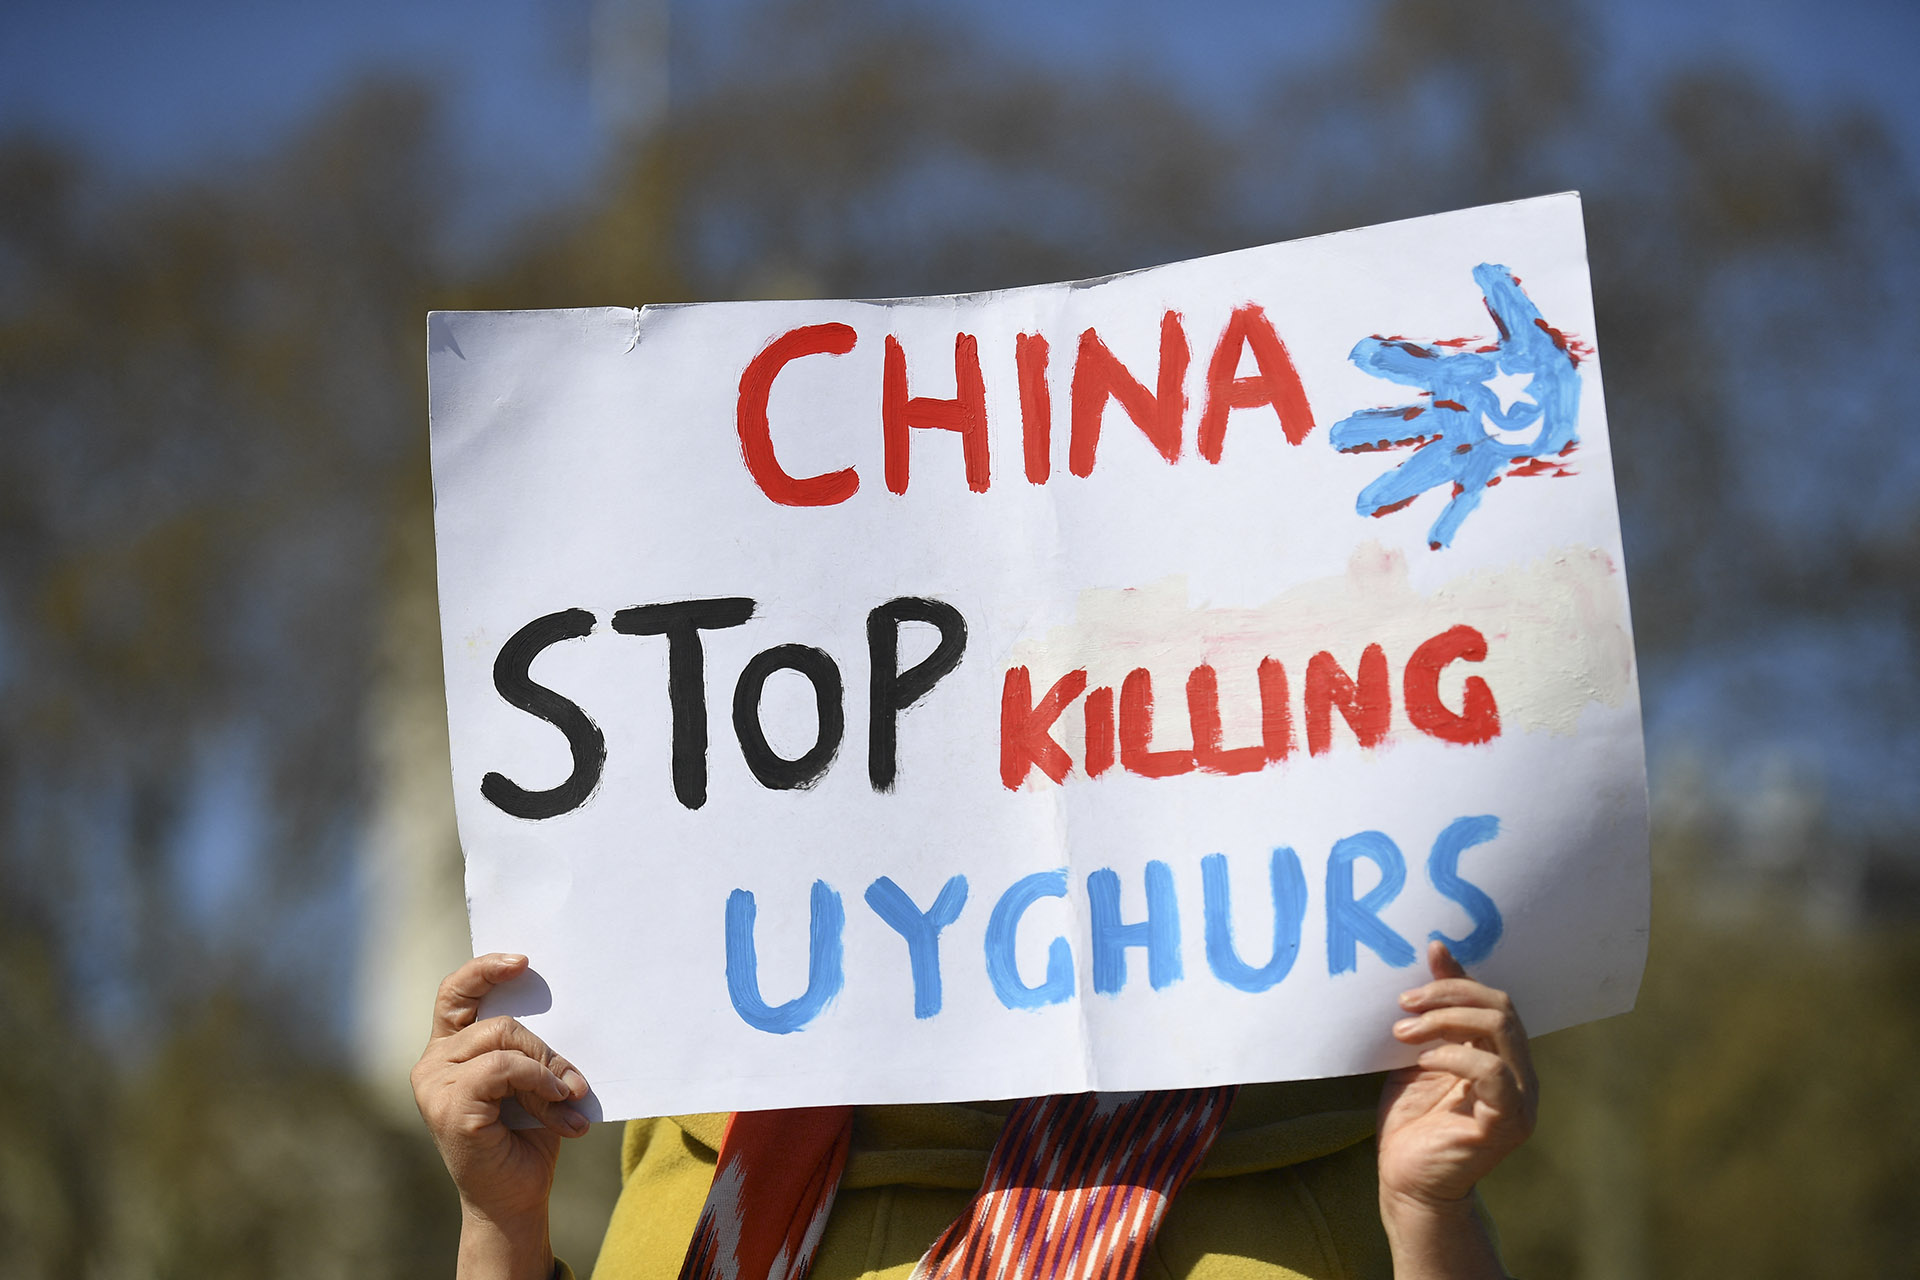 A kínai állam árulhatja az ujgurok szerveit a feketepiacon